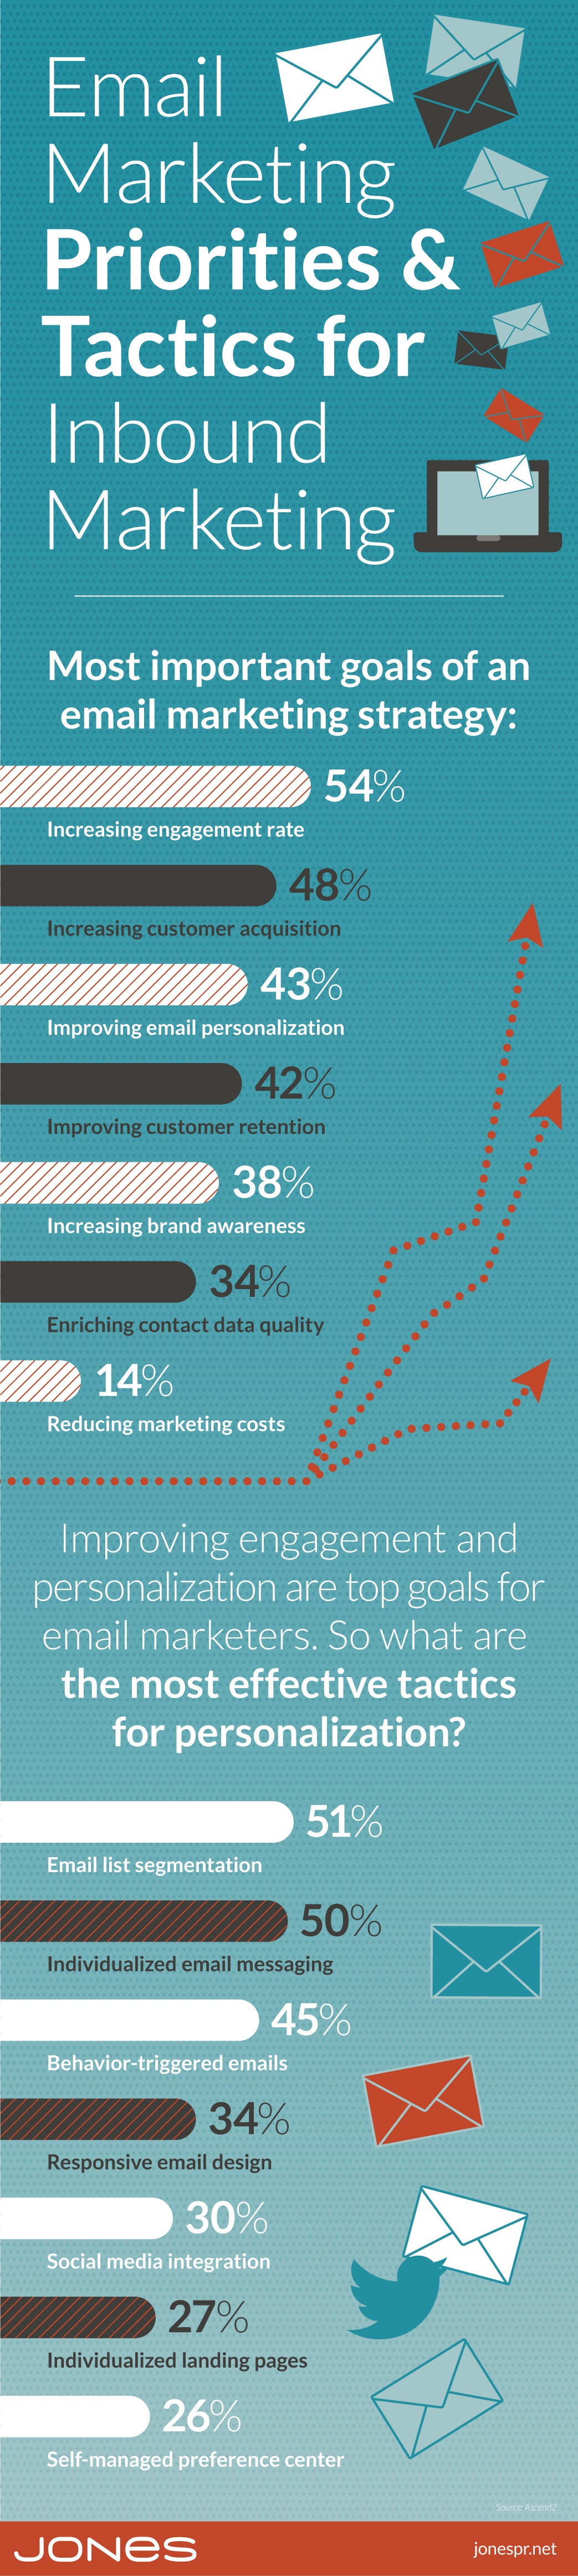 jones-infographic-email-marketing-priorities-inbound